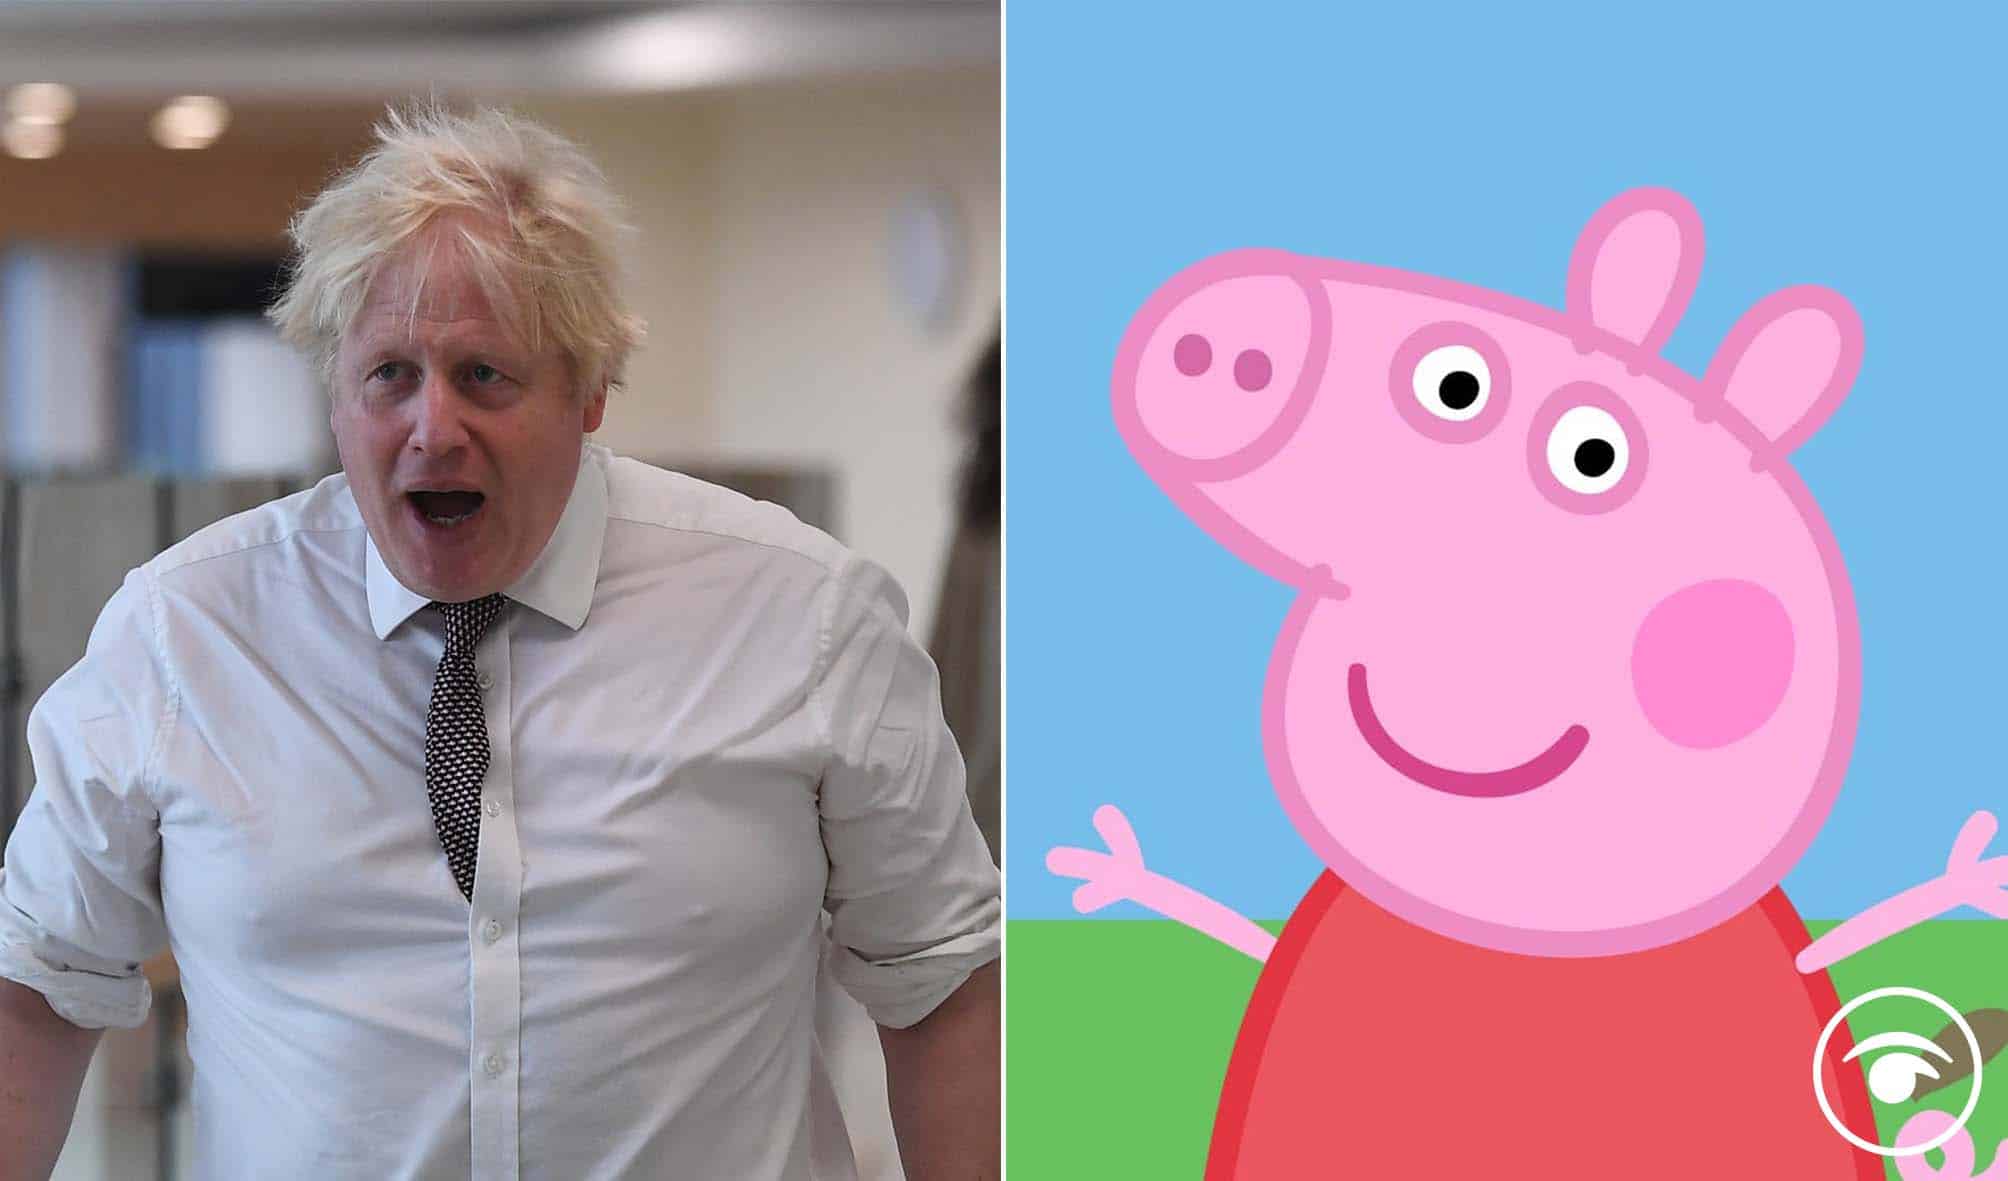 Best Peppa Pig World memes following PM’s bizarre CBI speech